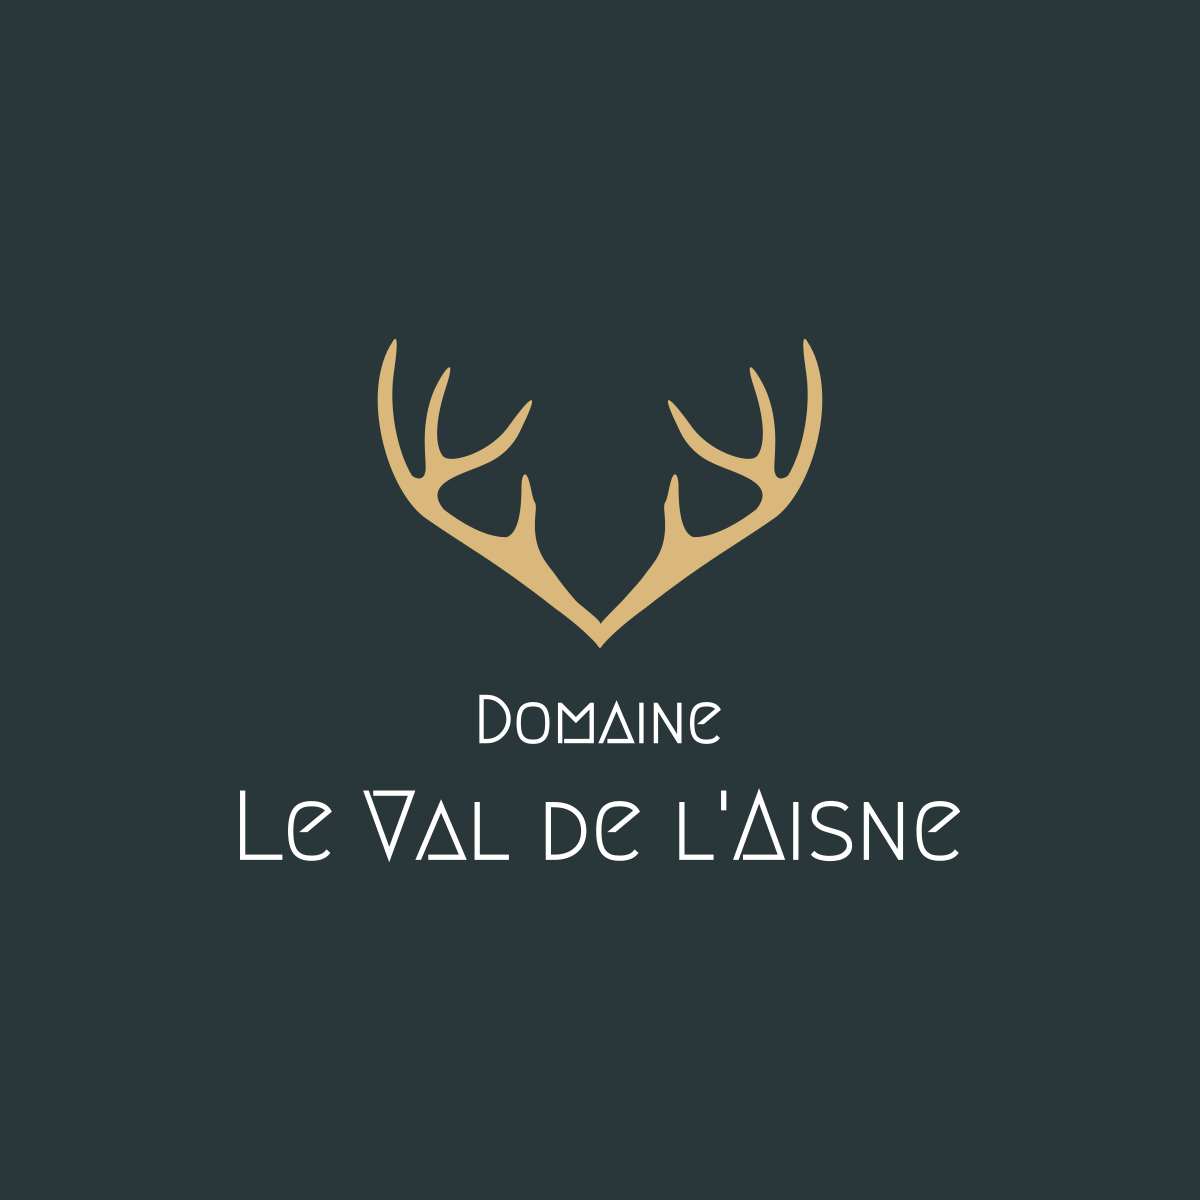 Domaine Le Val de l'Aisne